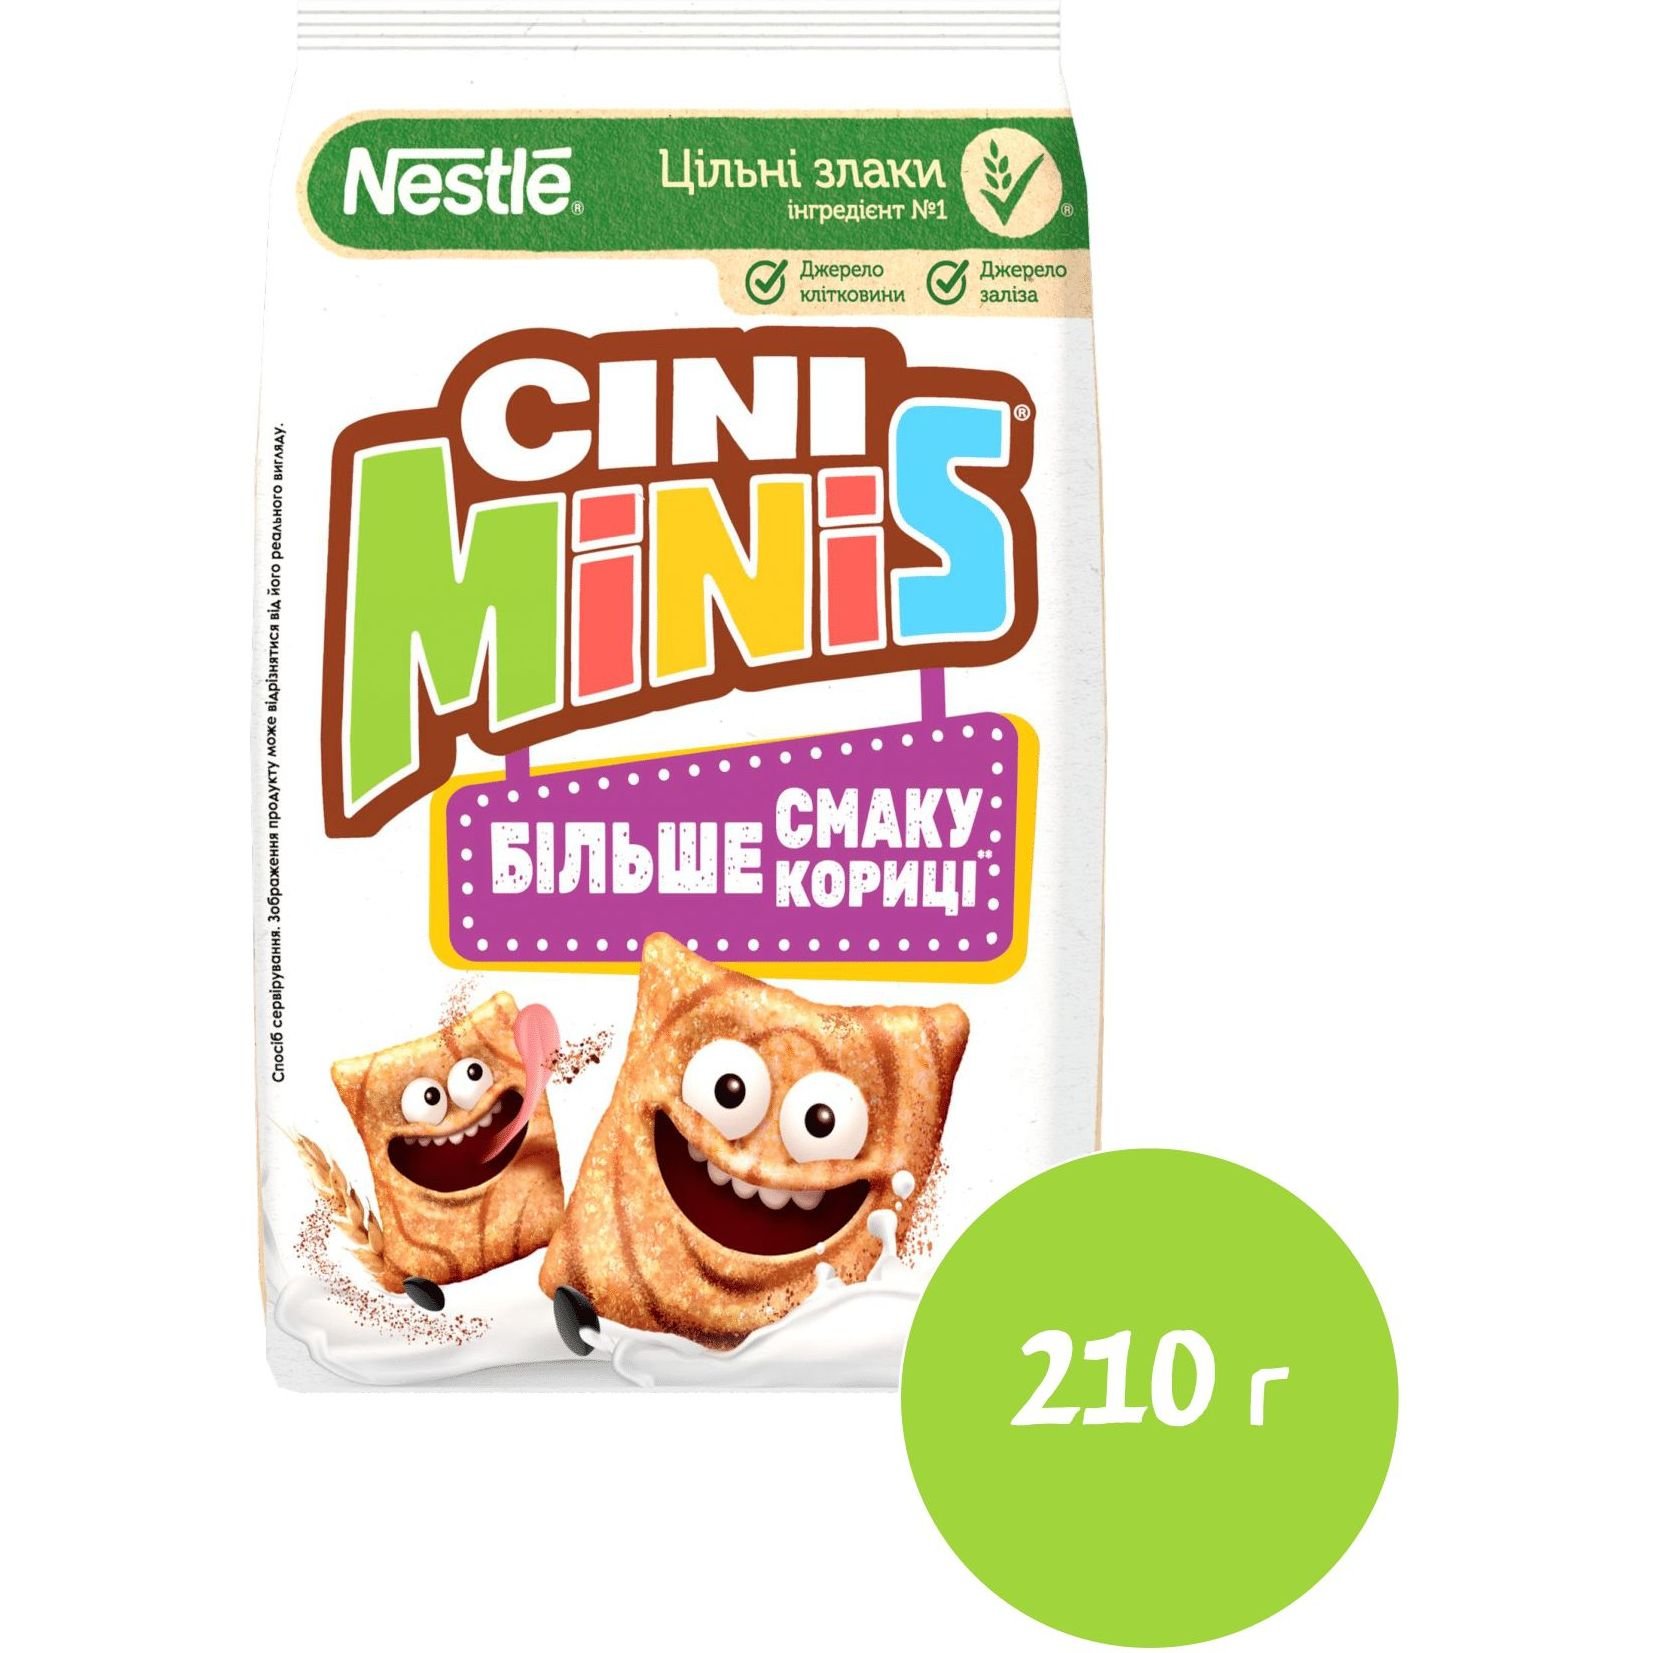 Готовый сухой завтрак Cini Minis с корицей 210 г - фото 2